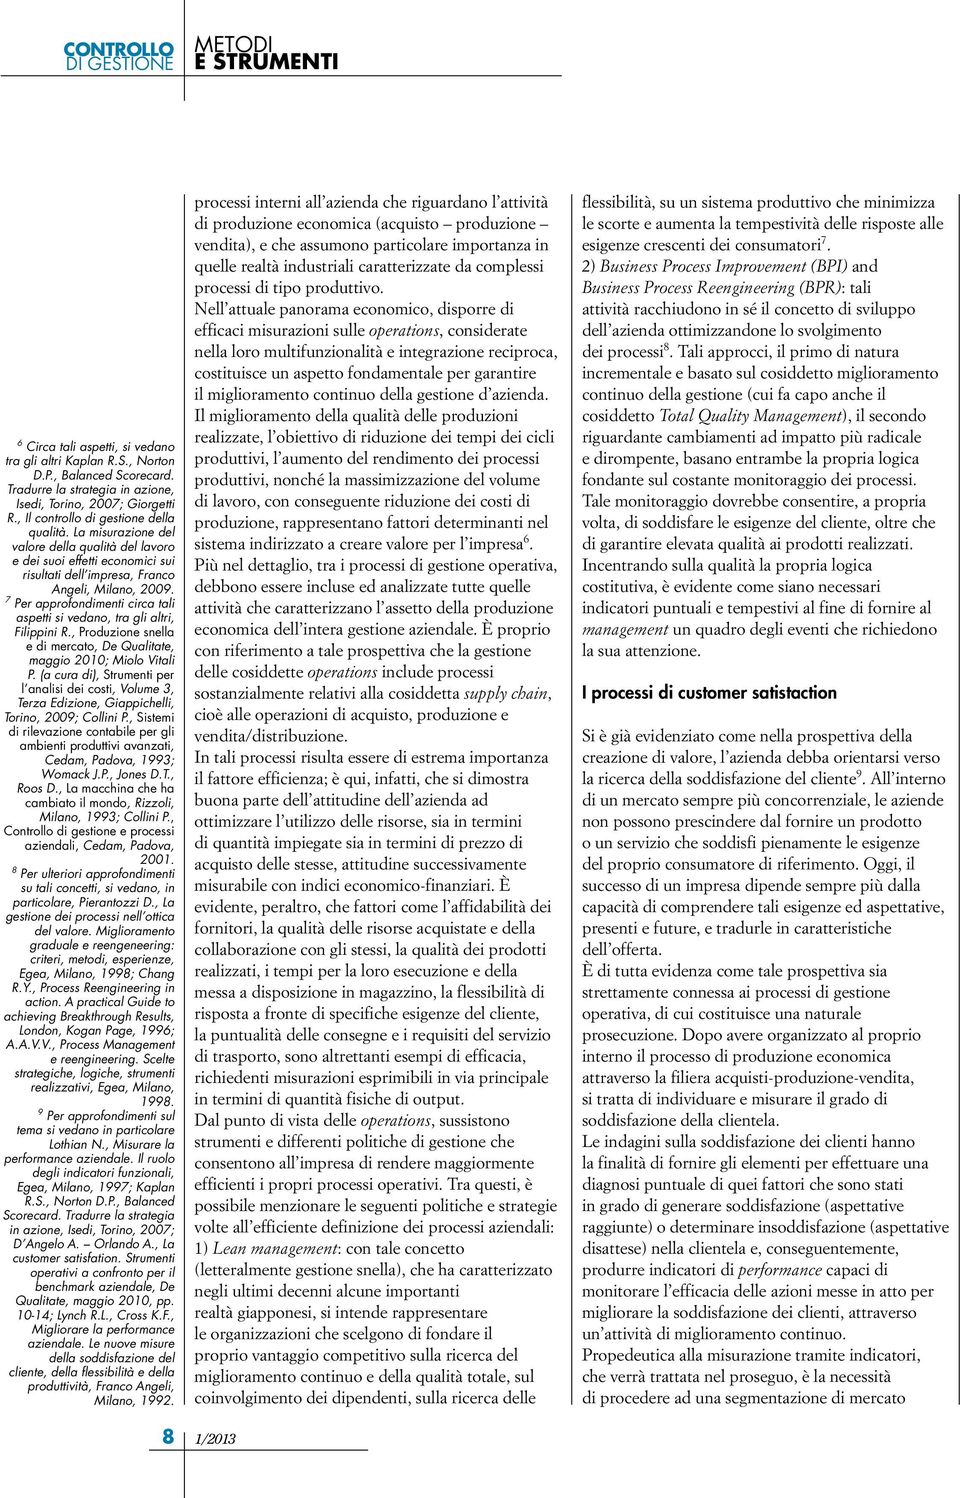 7 Per approfondimenti circa tali aspetti si vedano, tra gli altri, Filippini R., Produzione snella e di mercato, De Qualitate, maggio 2010; Miolo Vitali P.